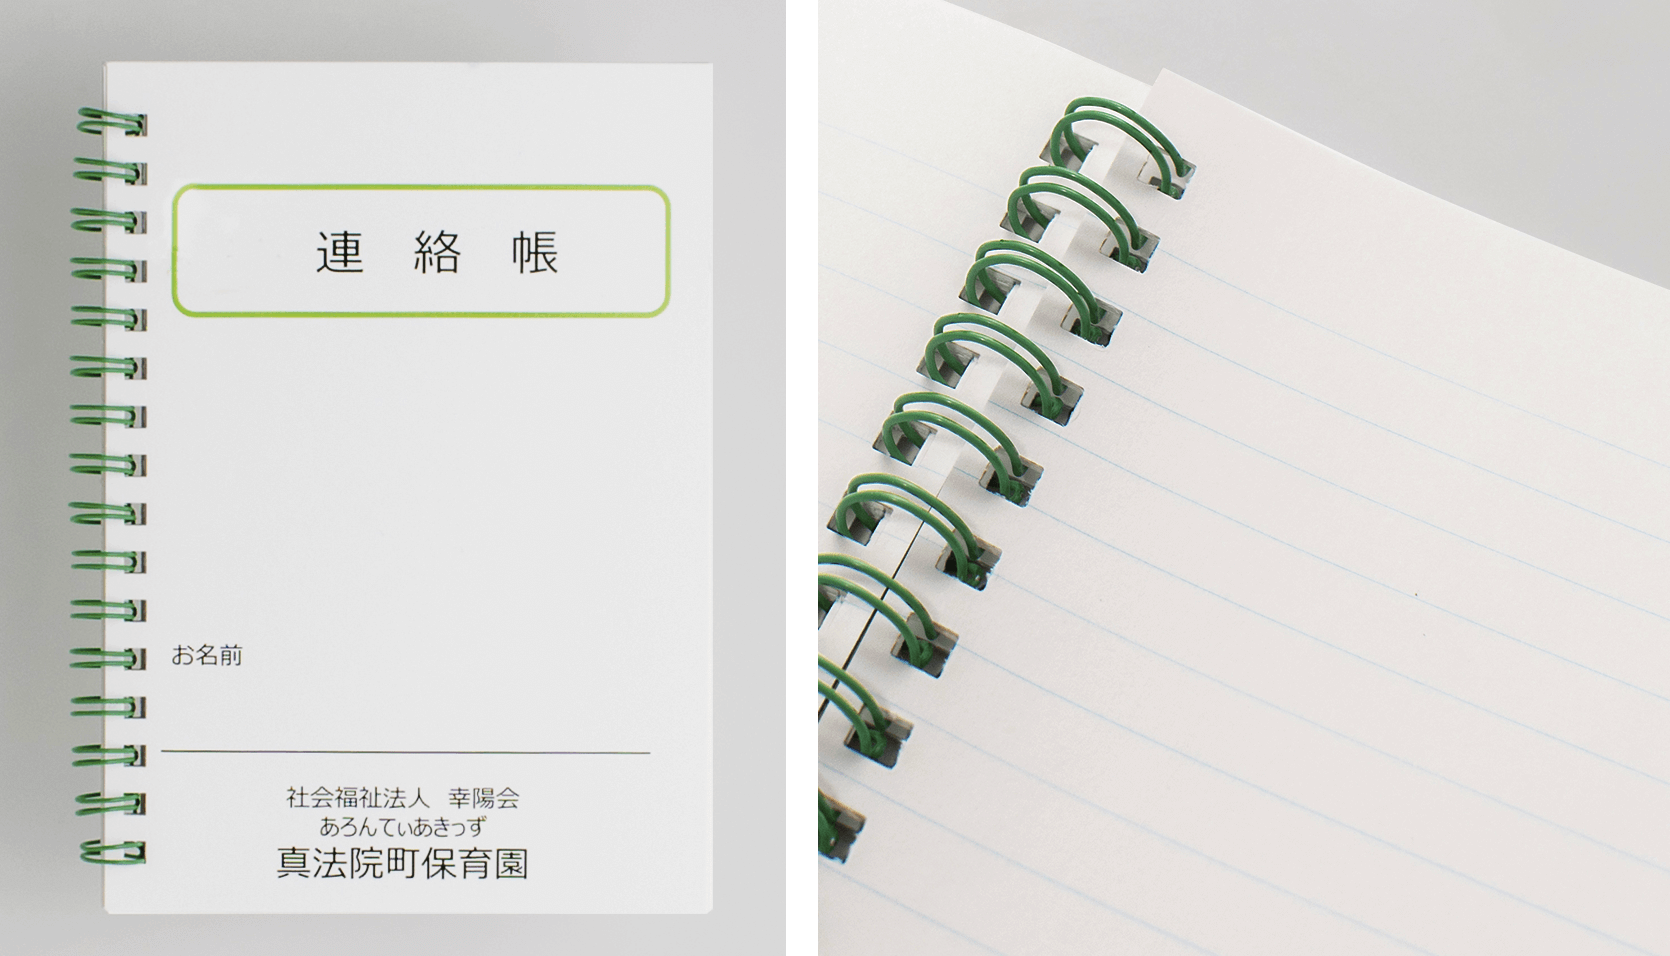 中綴じ製本の連絡帳とは別に製作した、リング製本のシンプルなノート